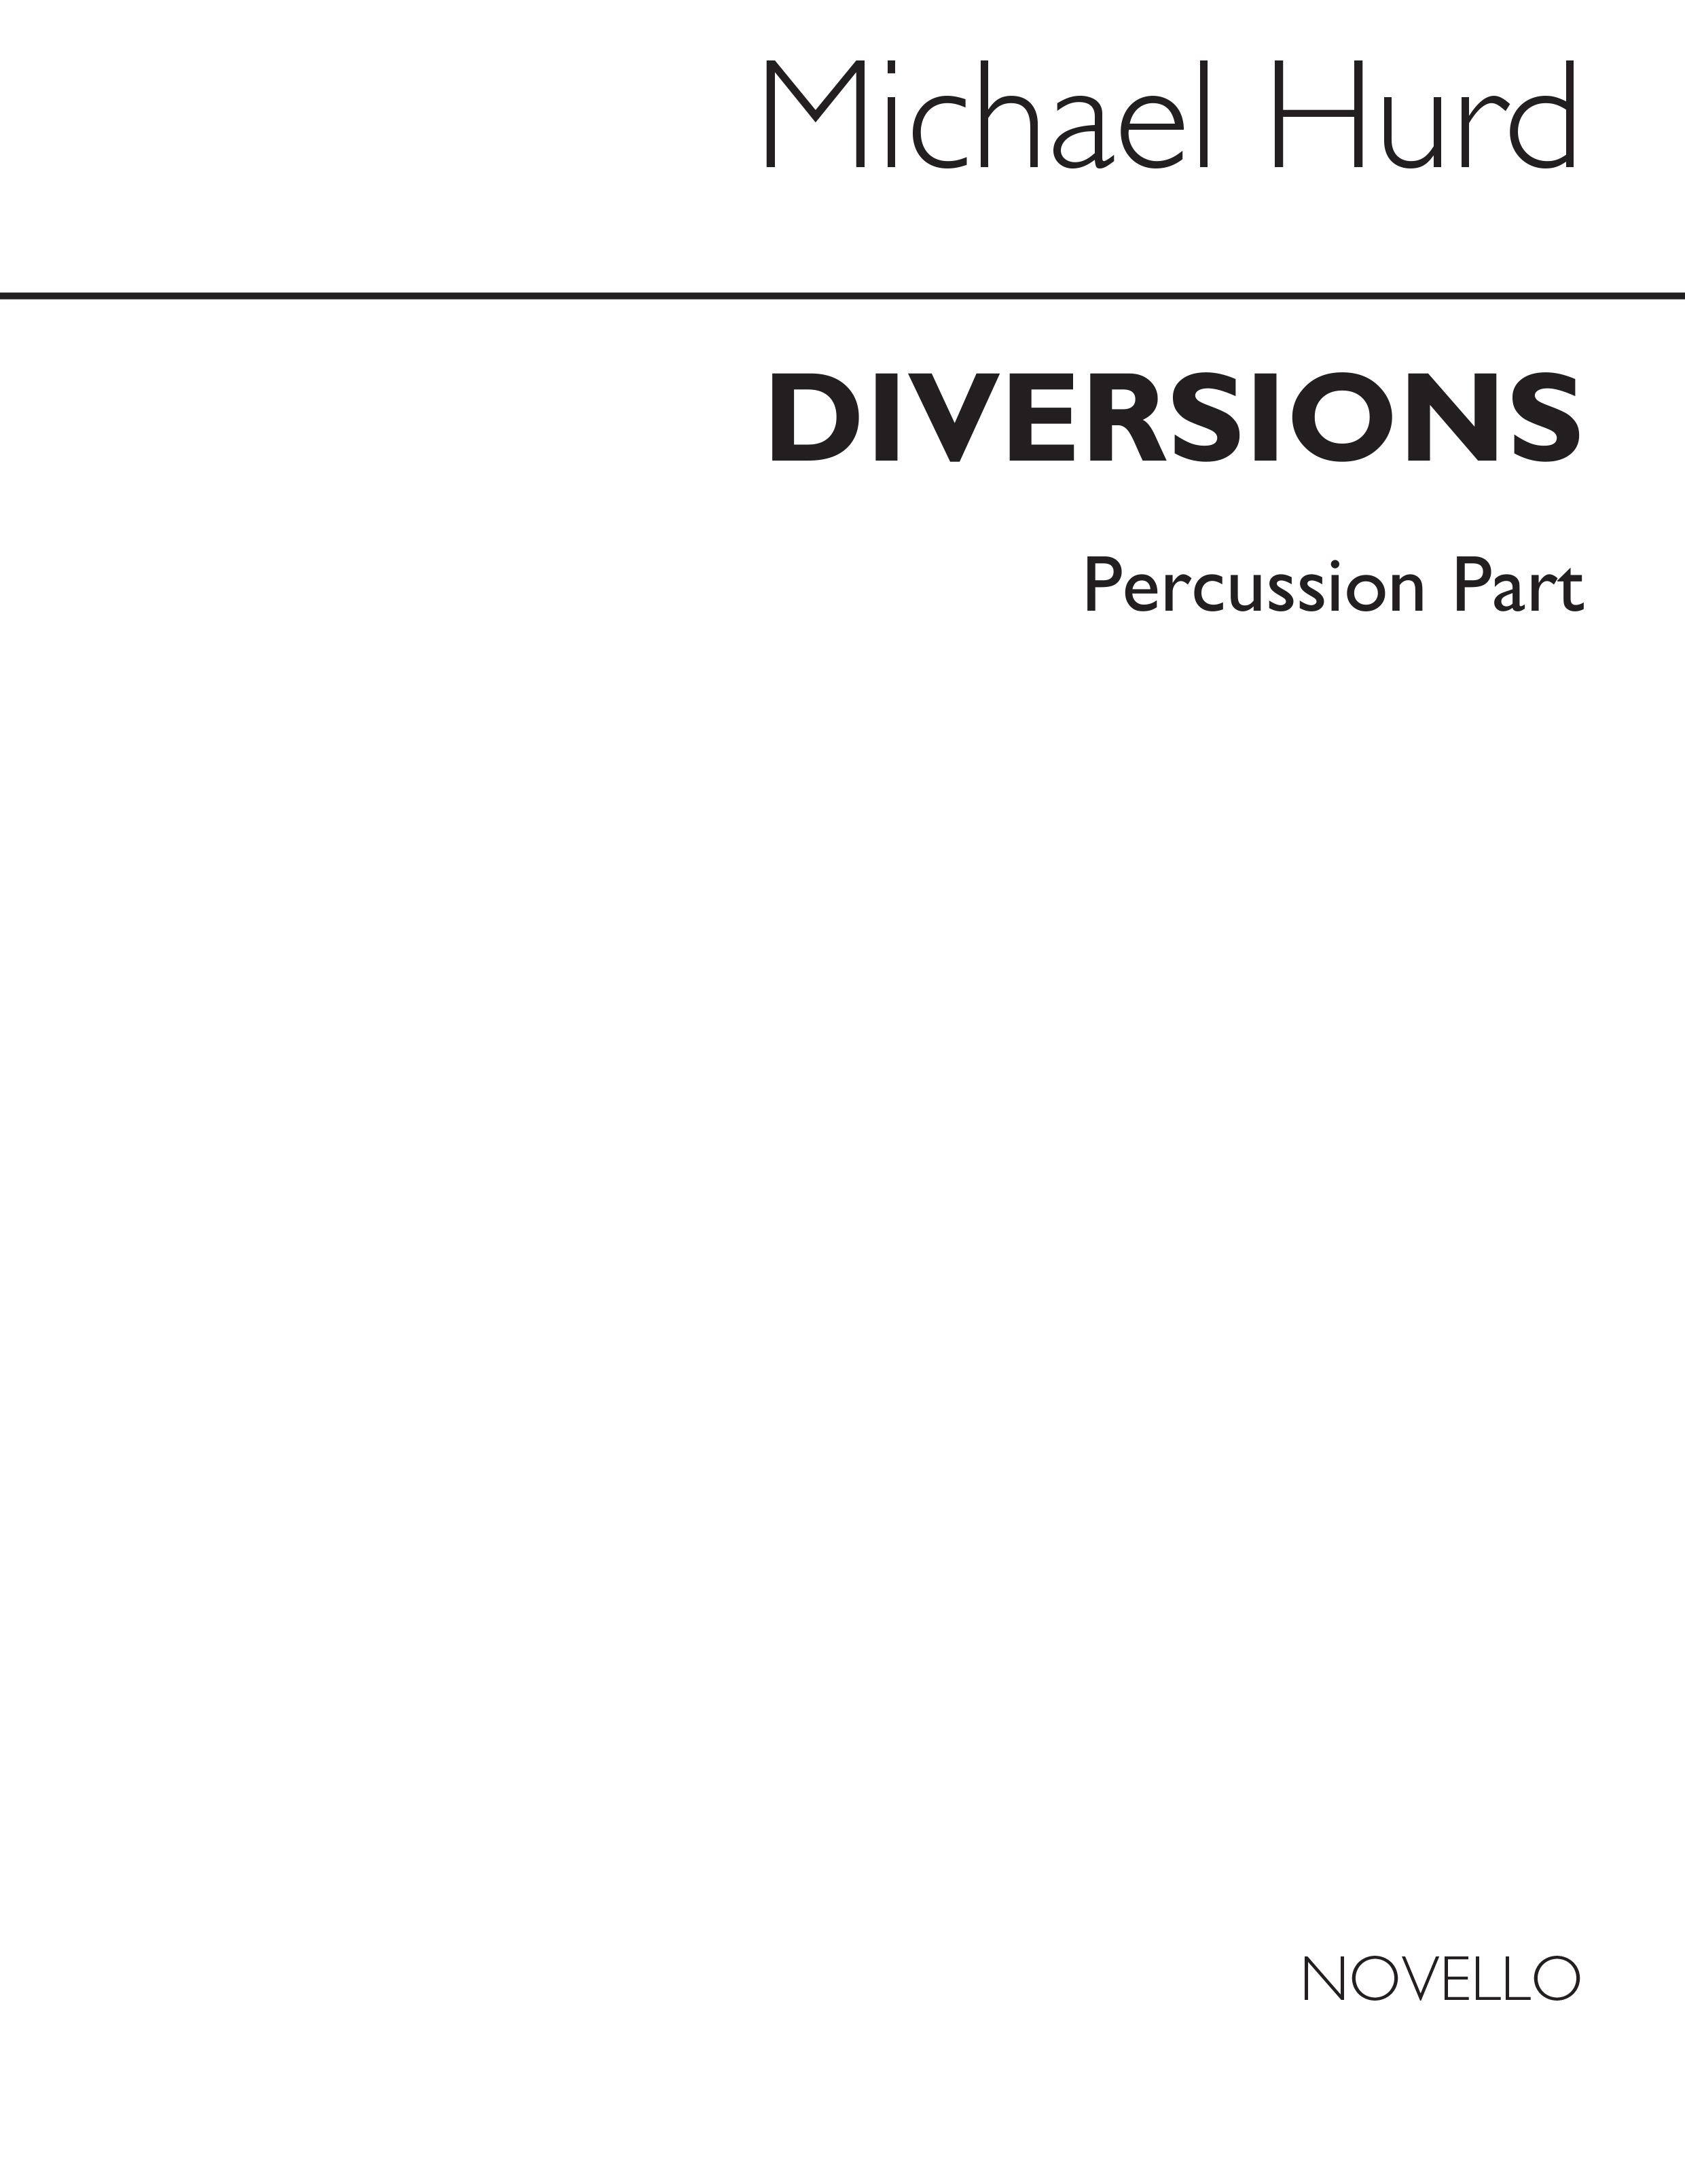 Hurd: Diversions Set 2 No.4 (Percussion Part)